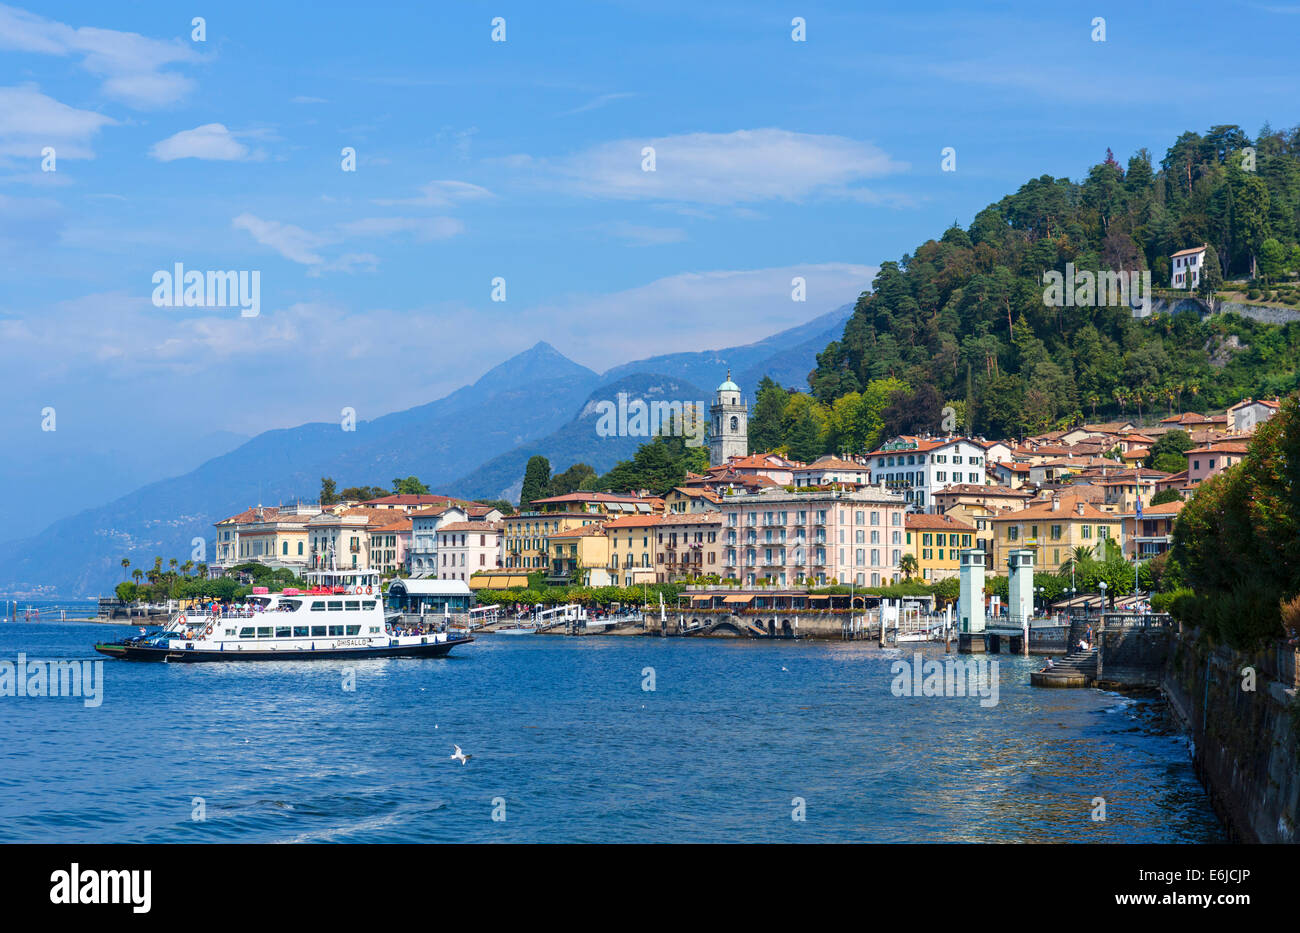 Ferry acercándose al dock en Bellagio, Lago de Como, lagos italianos, Lombardía, Italia Foto de stock